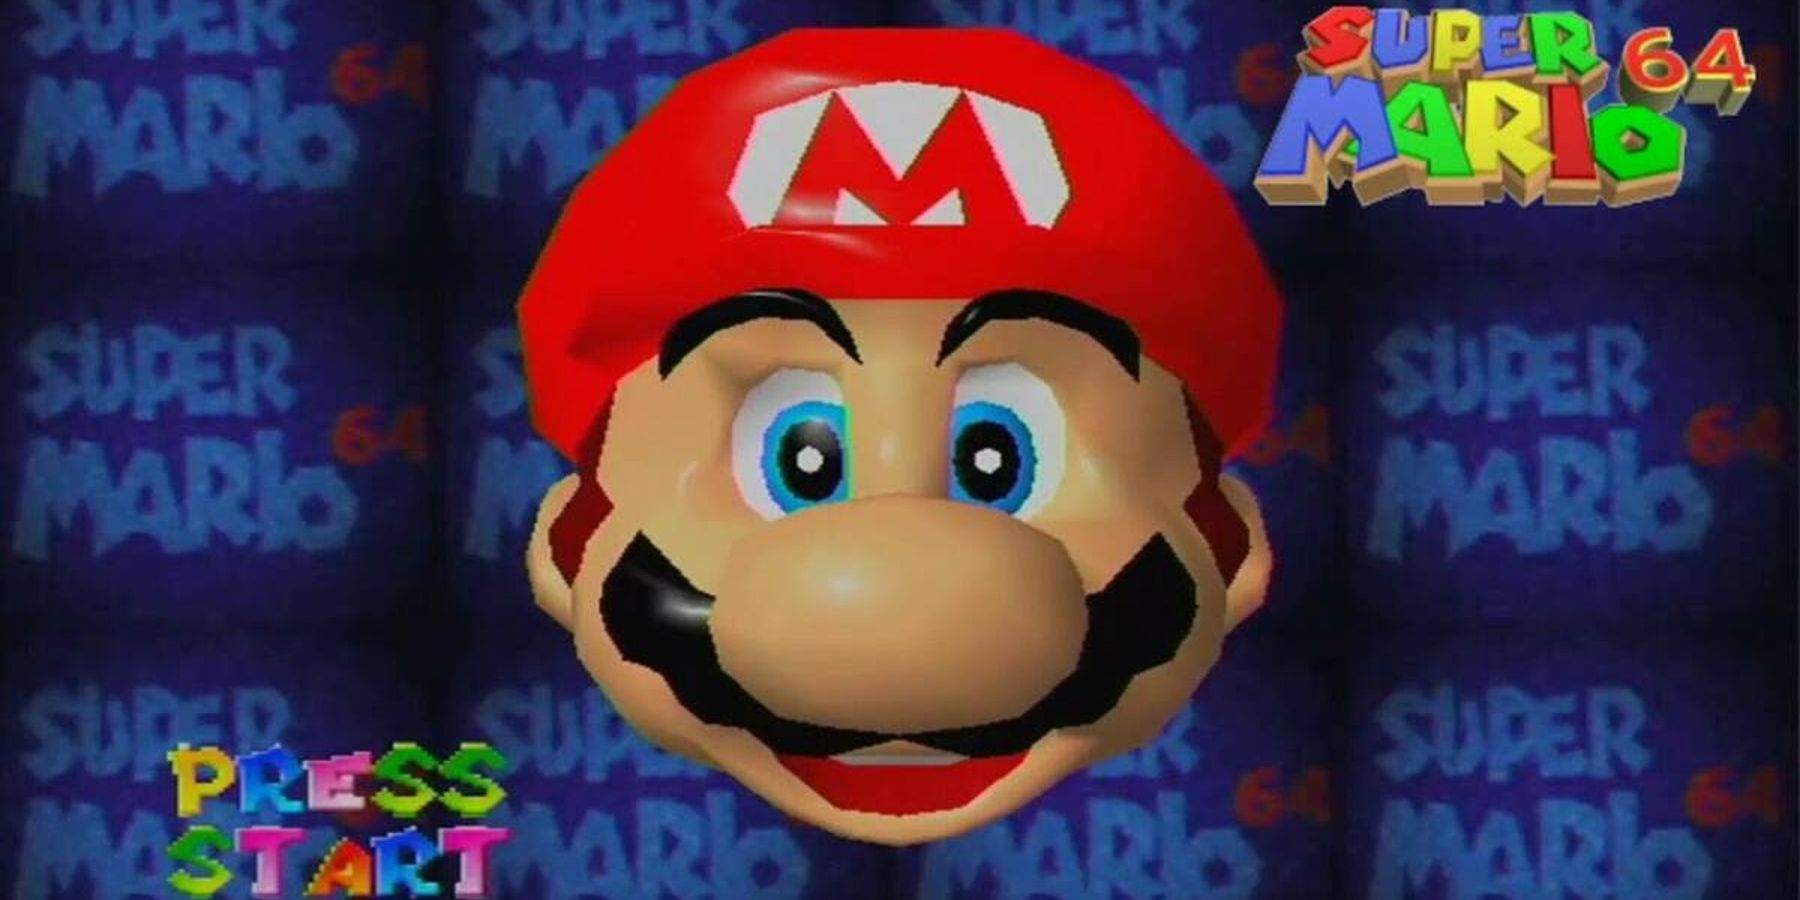 Super Mario-1